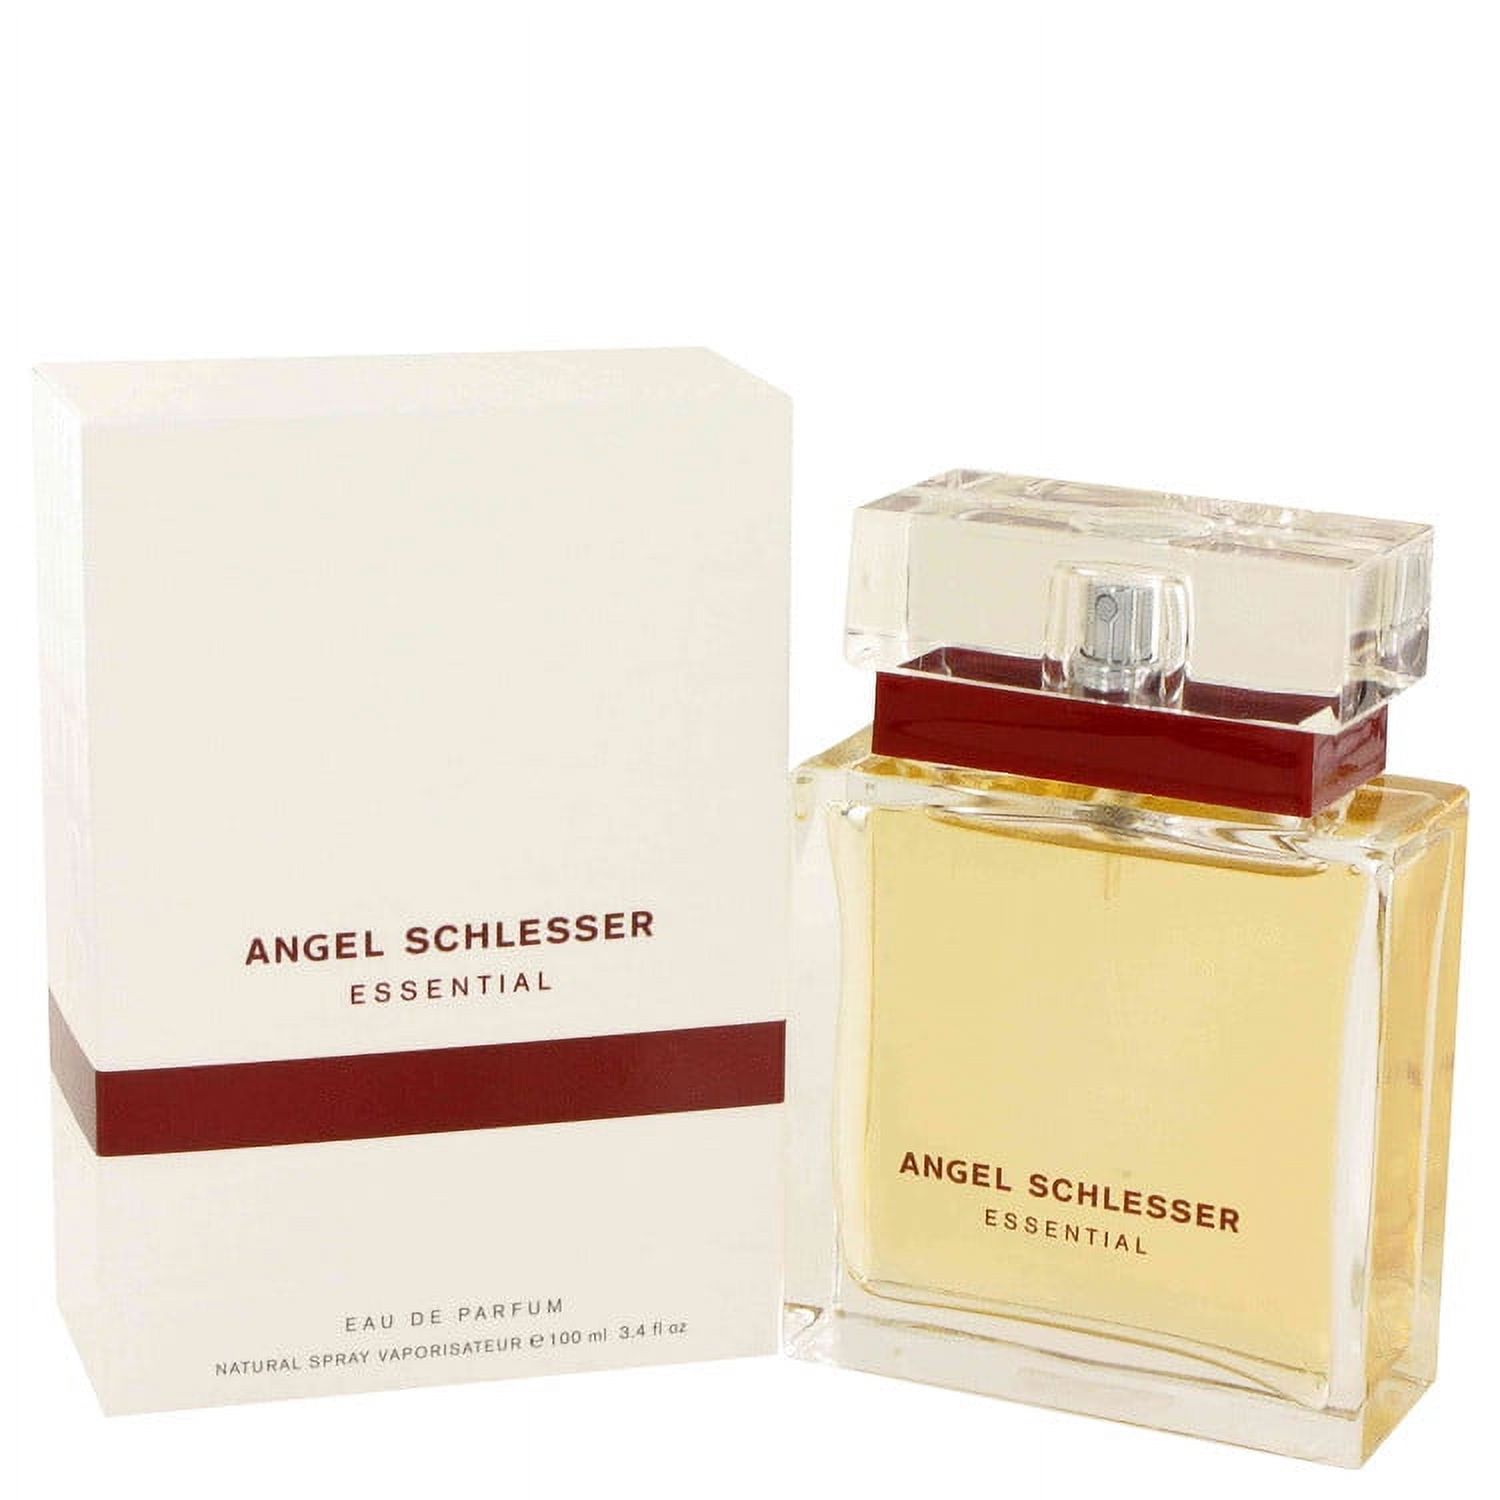 Angel Schlesser Angel Schlesser Essential Eau De Parfum Spray for Women 3.4 oz - image 1 of 2